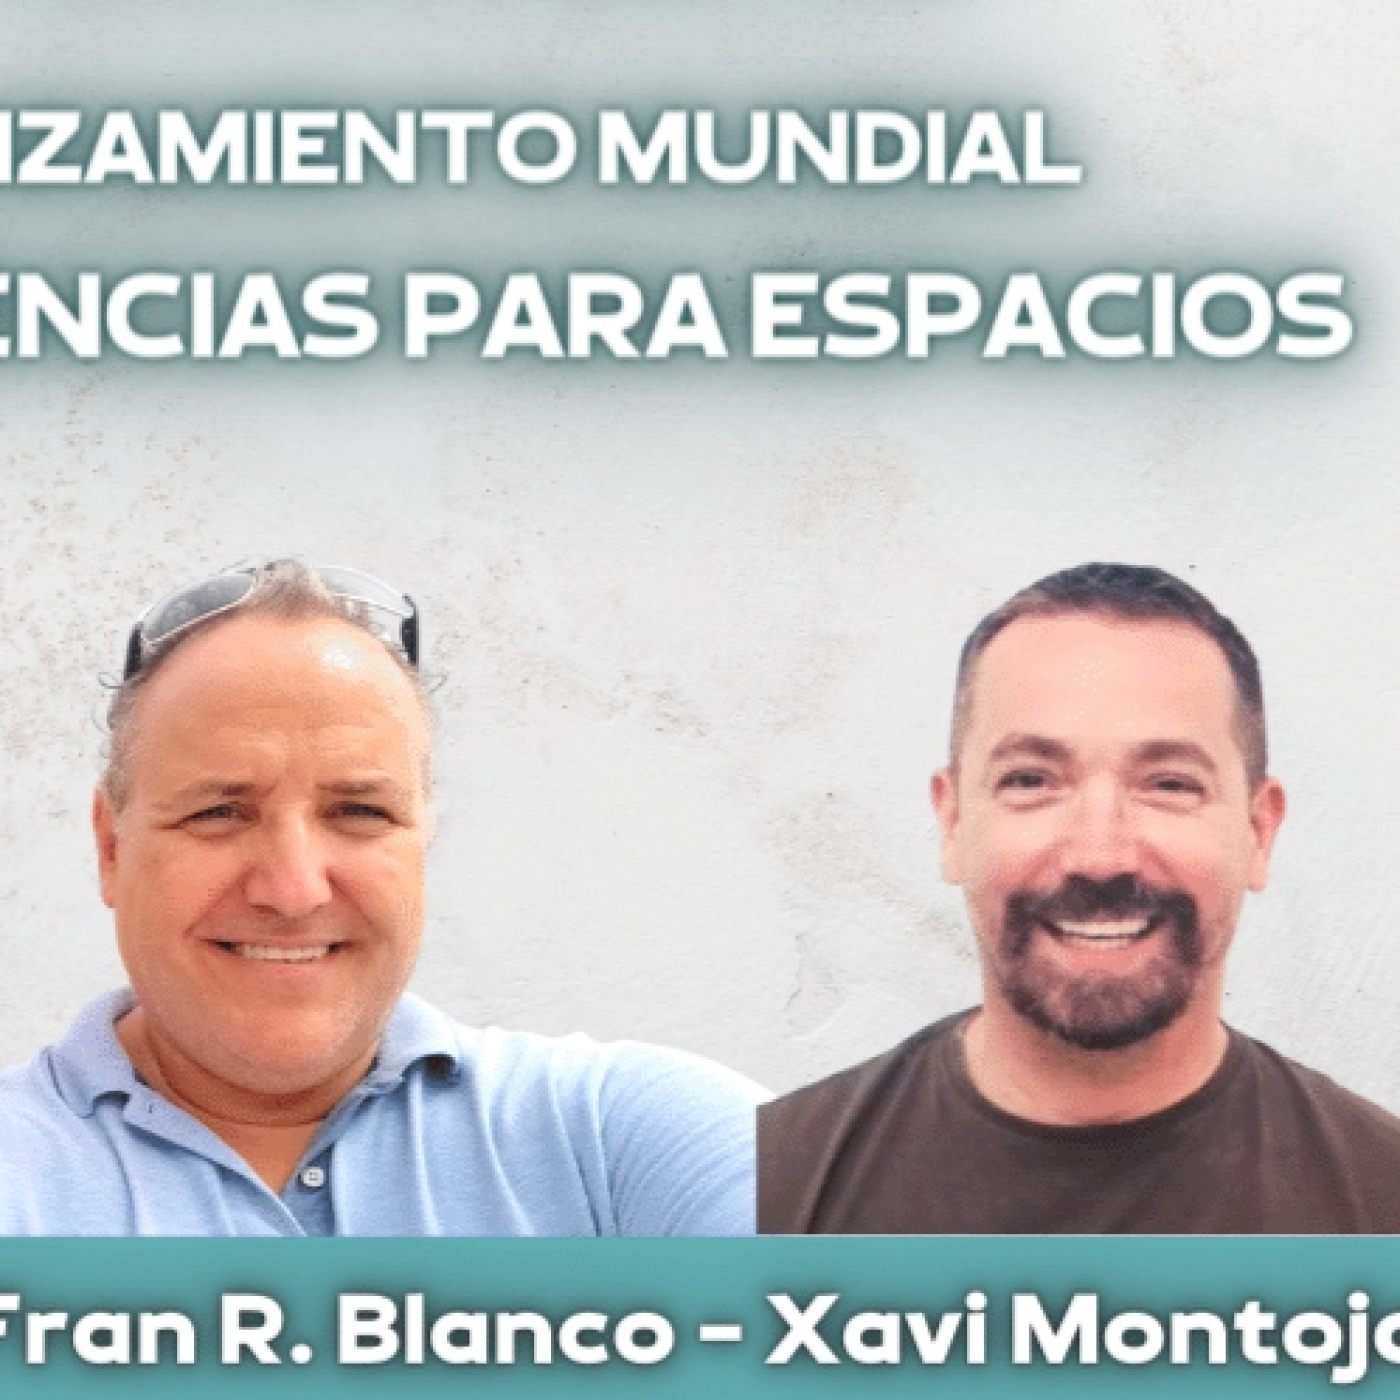 Maghealy. Lanzamiento Mundial- Frecuencias para Espacios con Xavi Montojo y Fran Blanco